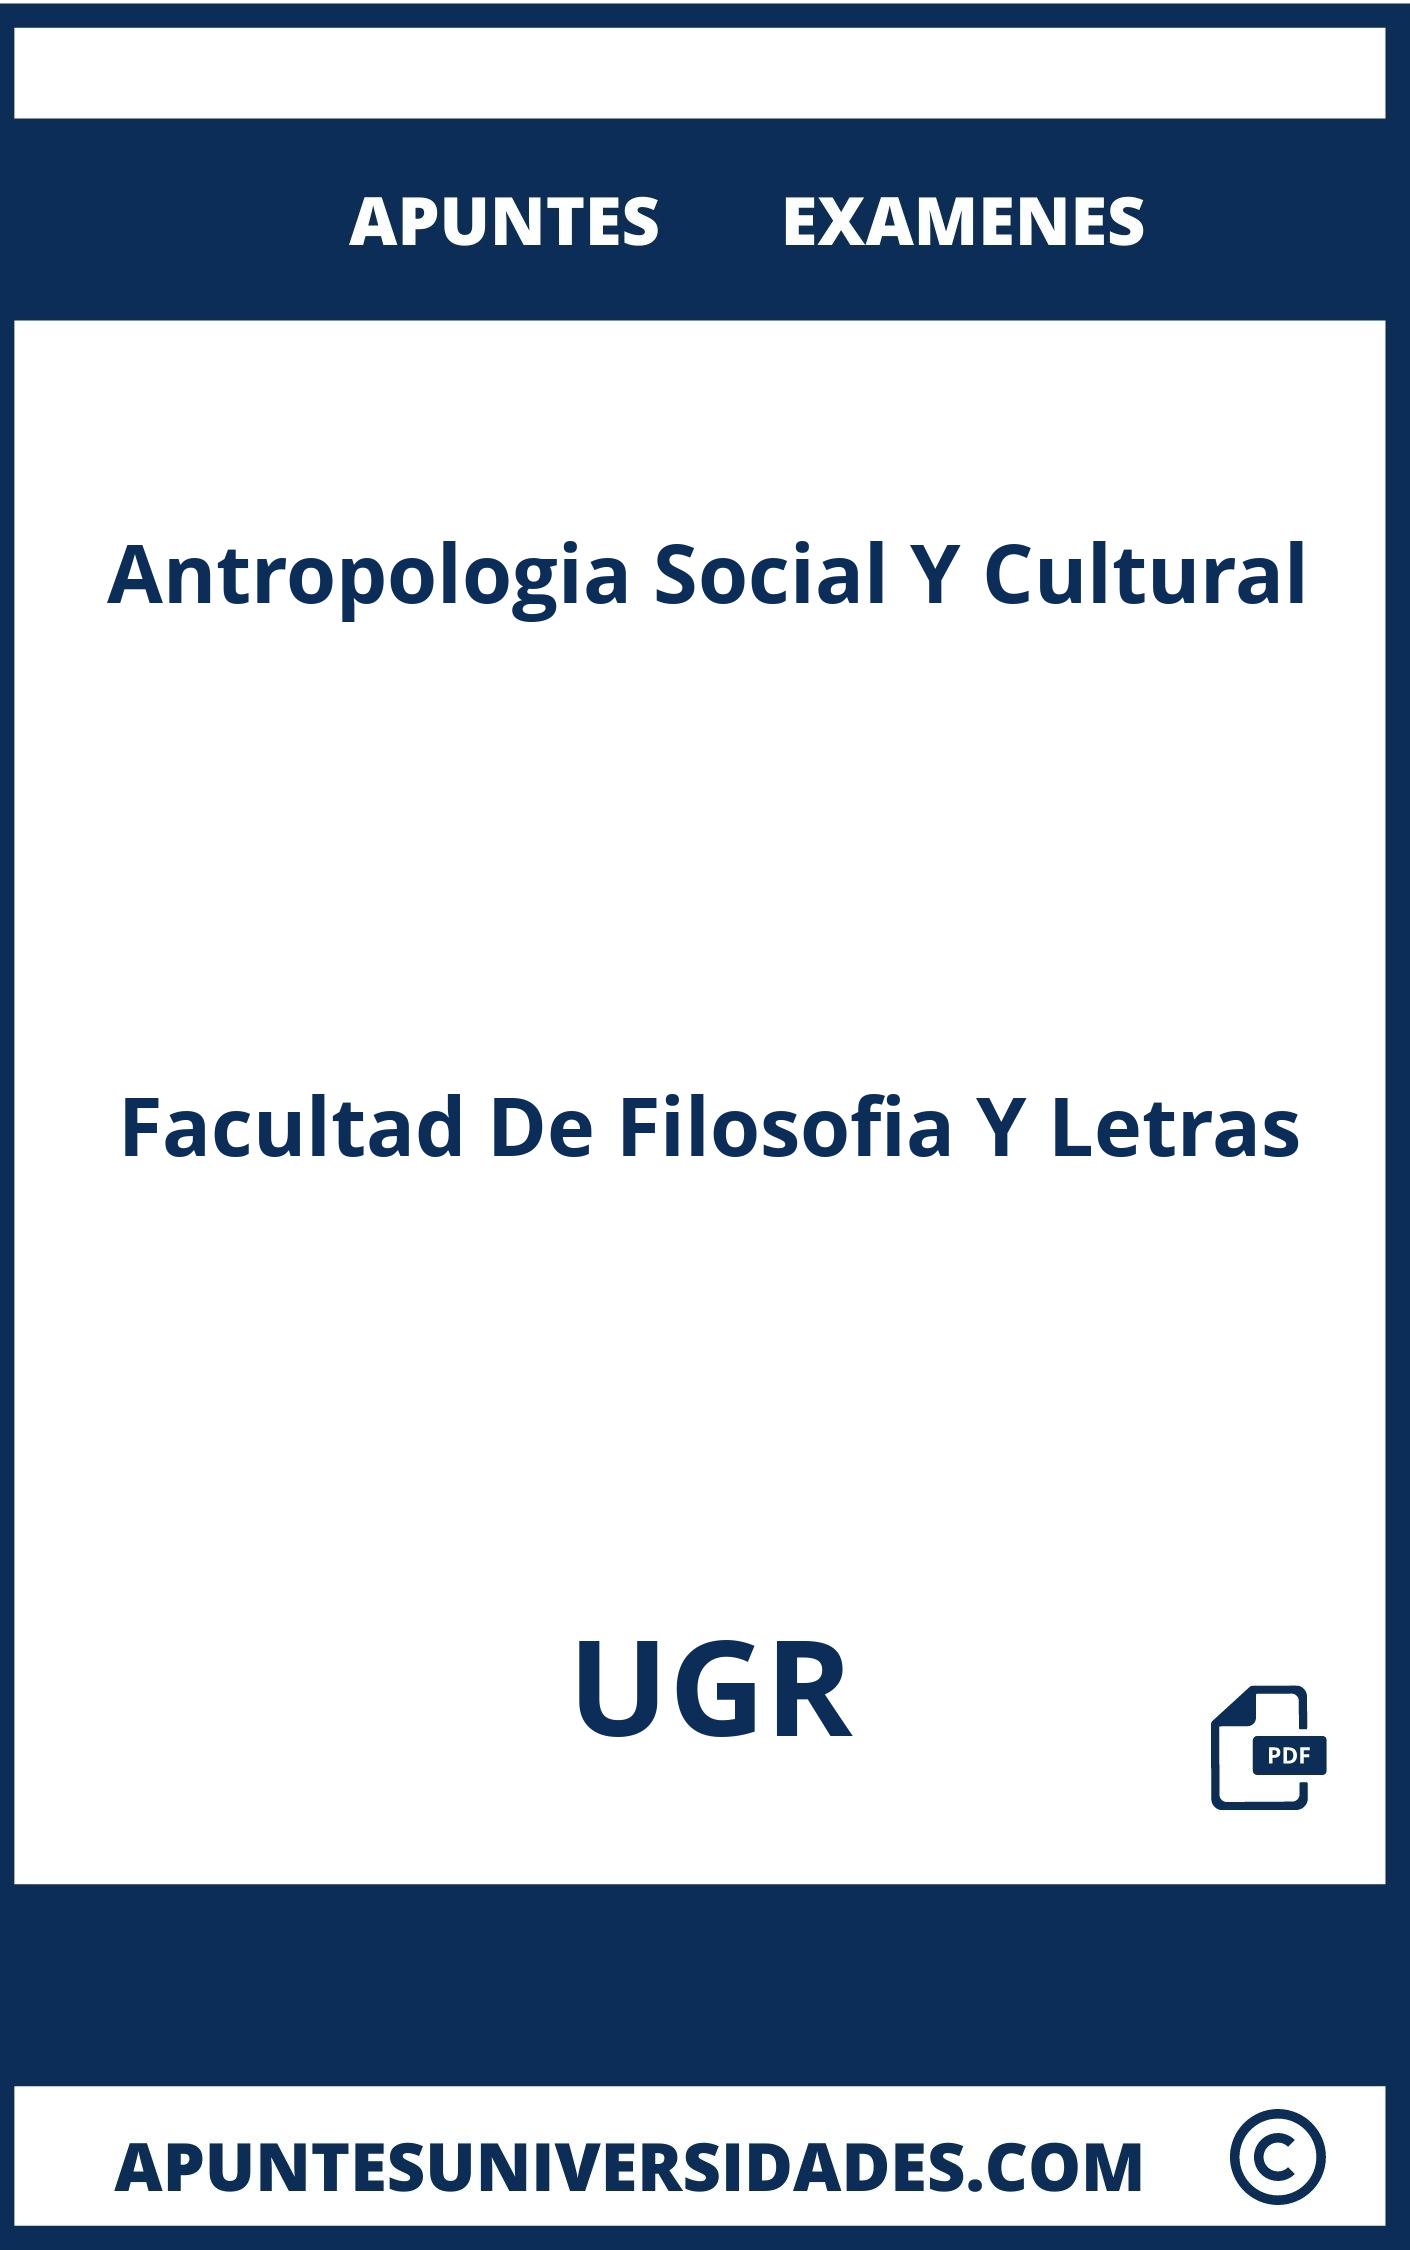 Examenes y Apuntes Antropologia Social Y Cultural UGR